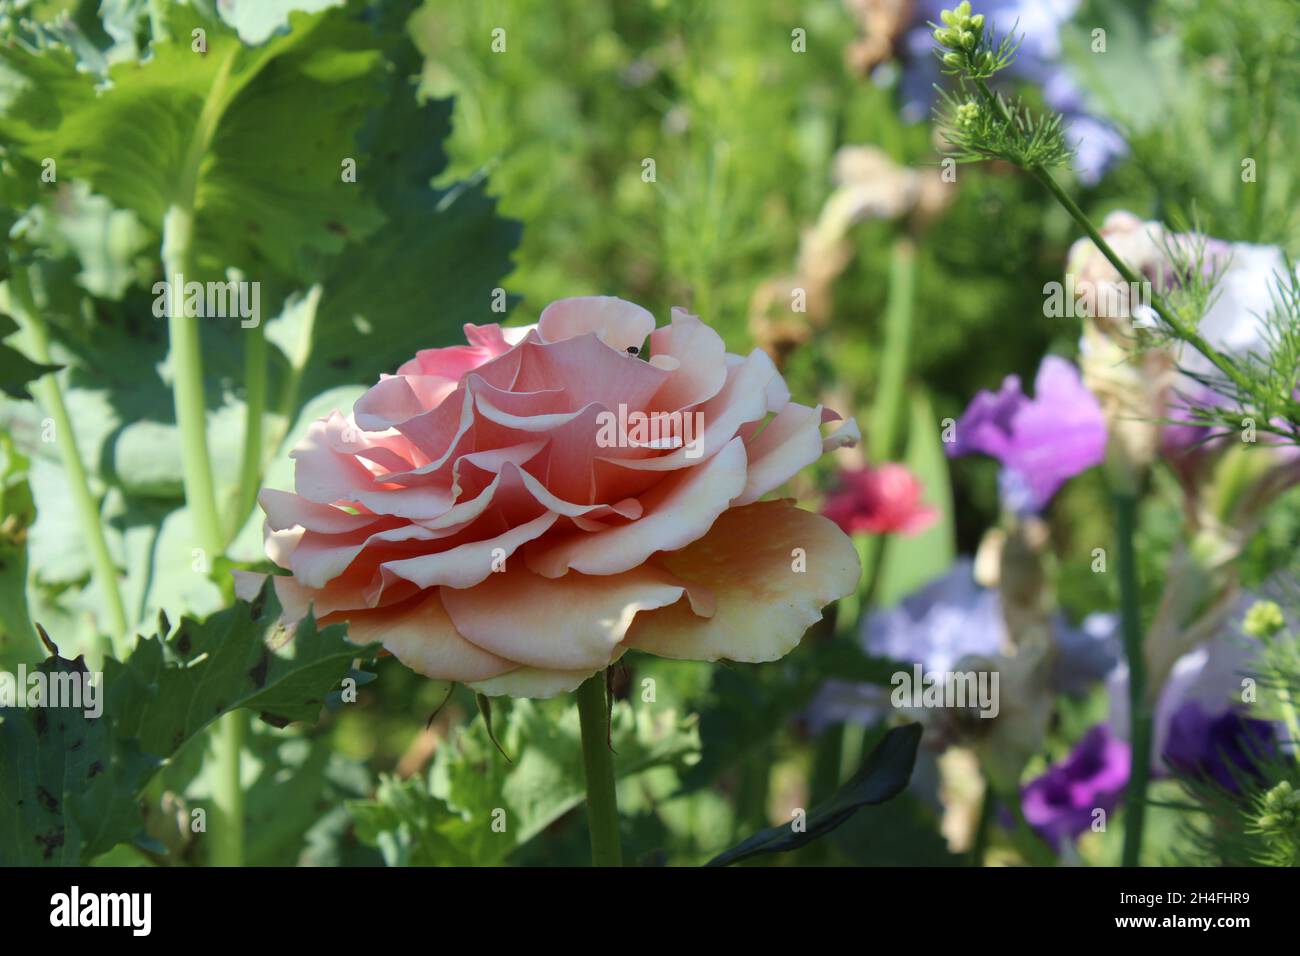 Buntes Blumenbeet in einem Garten. Vordergrund: eine große Blüte einer Rose in rosa apricot. im Hintergrund verschiedene Blumen wie Iris und Ziermohn. Stock Photo